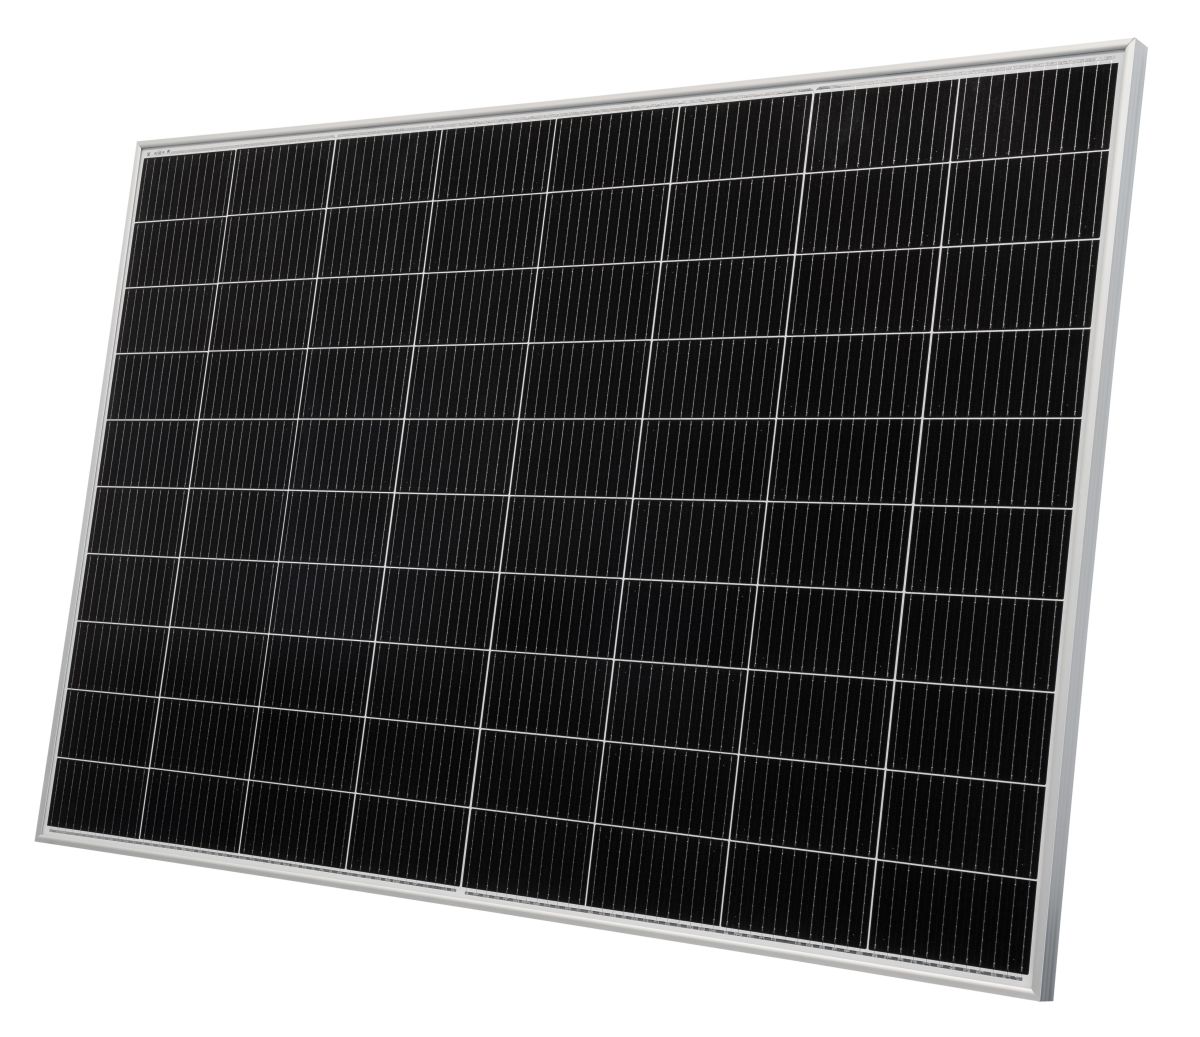 Solarmodul NeMo NeMo 4.2 80M(A) 395W